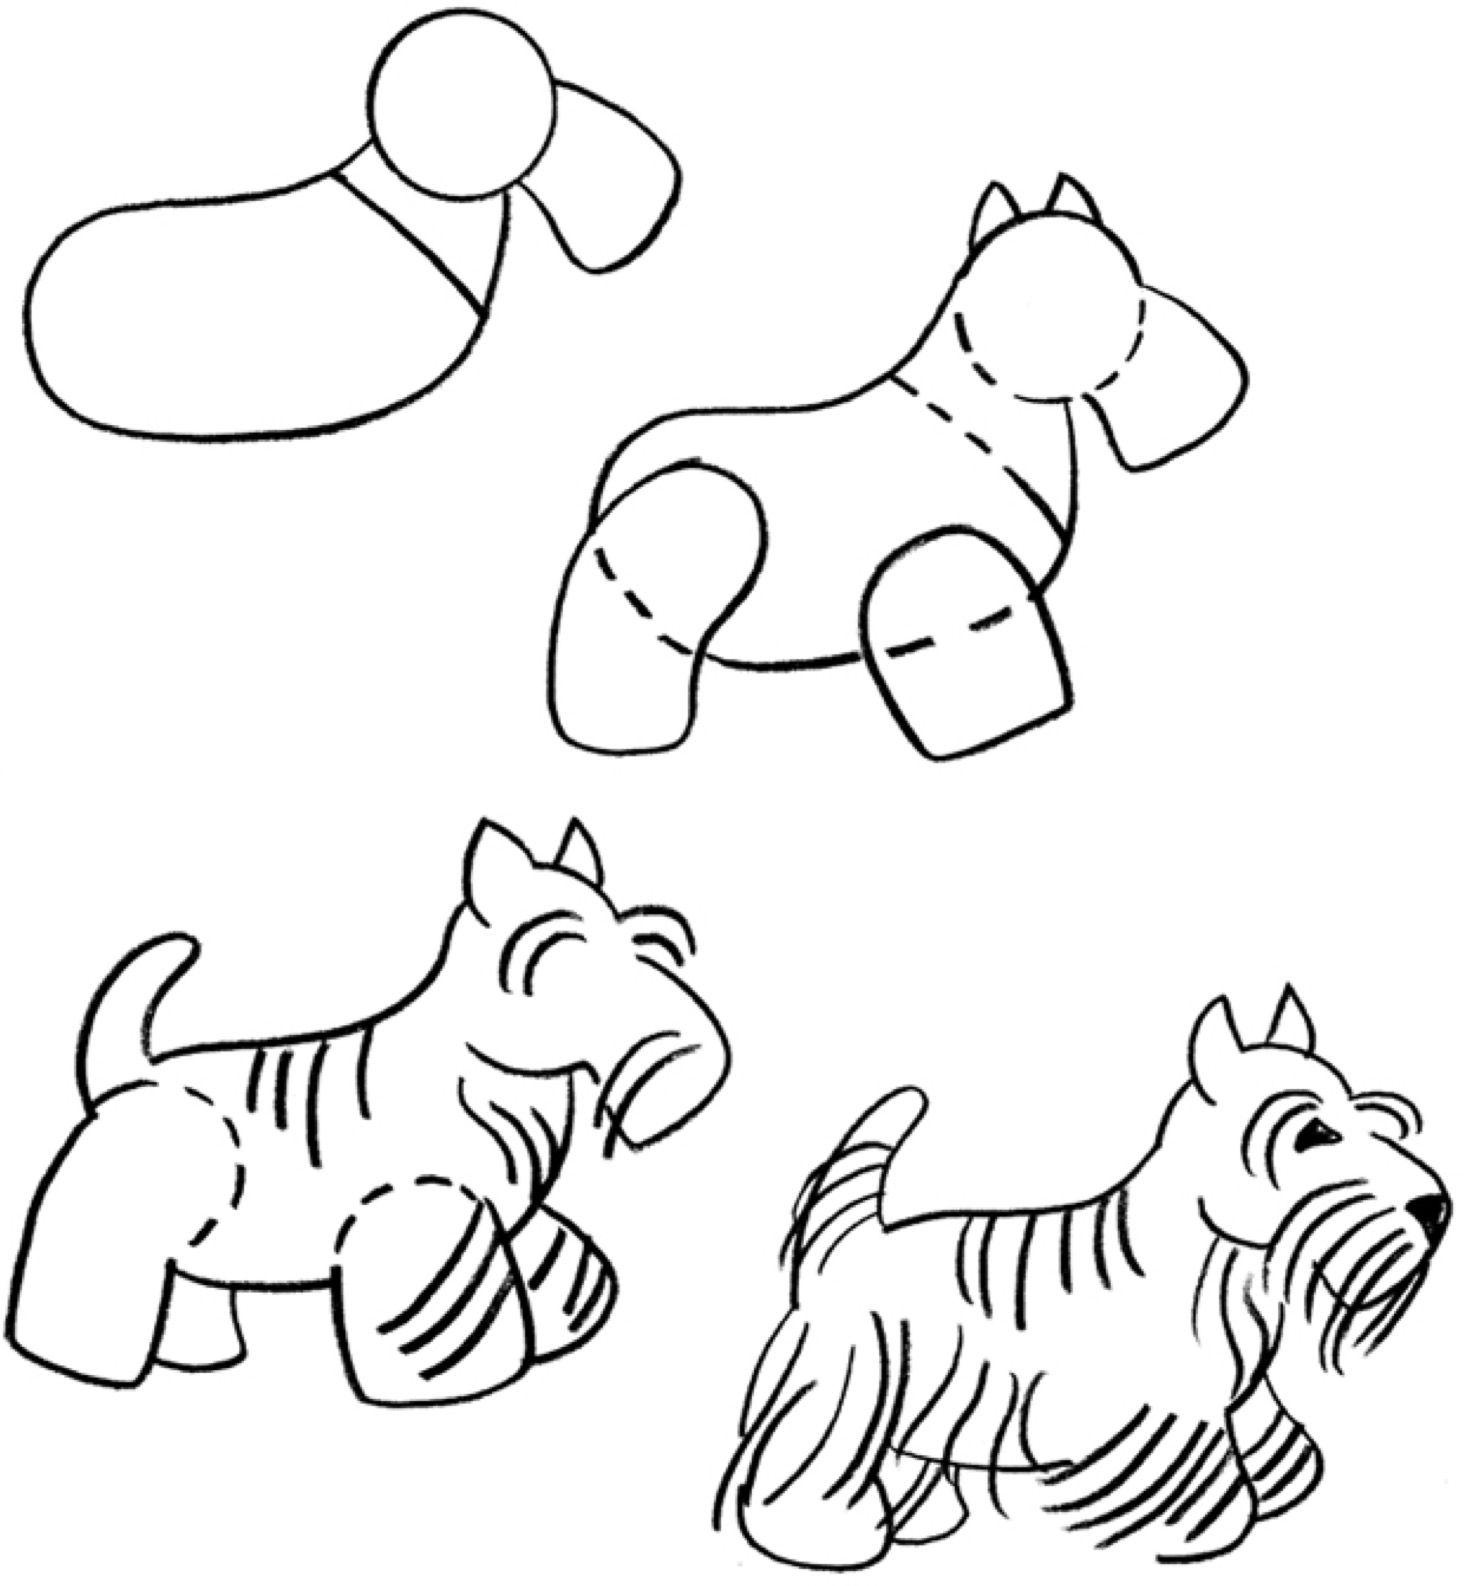 Урок рисования собаки для детей